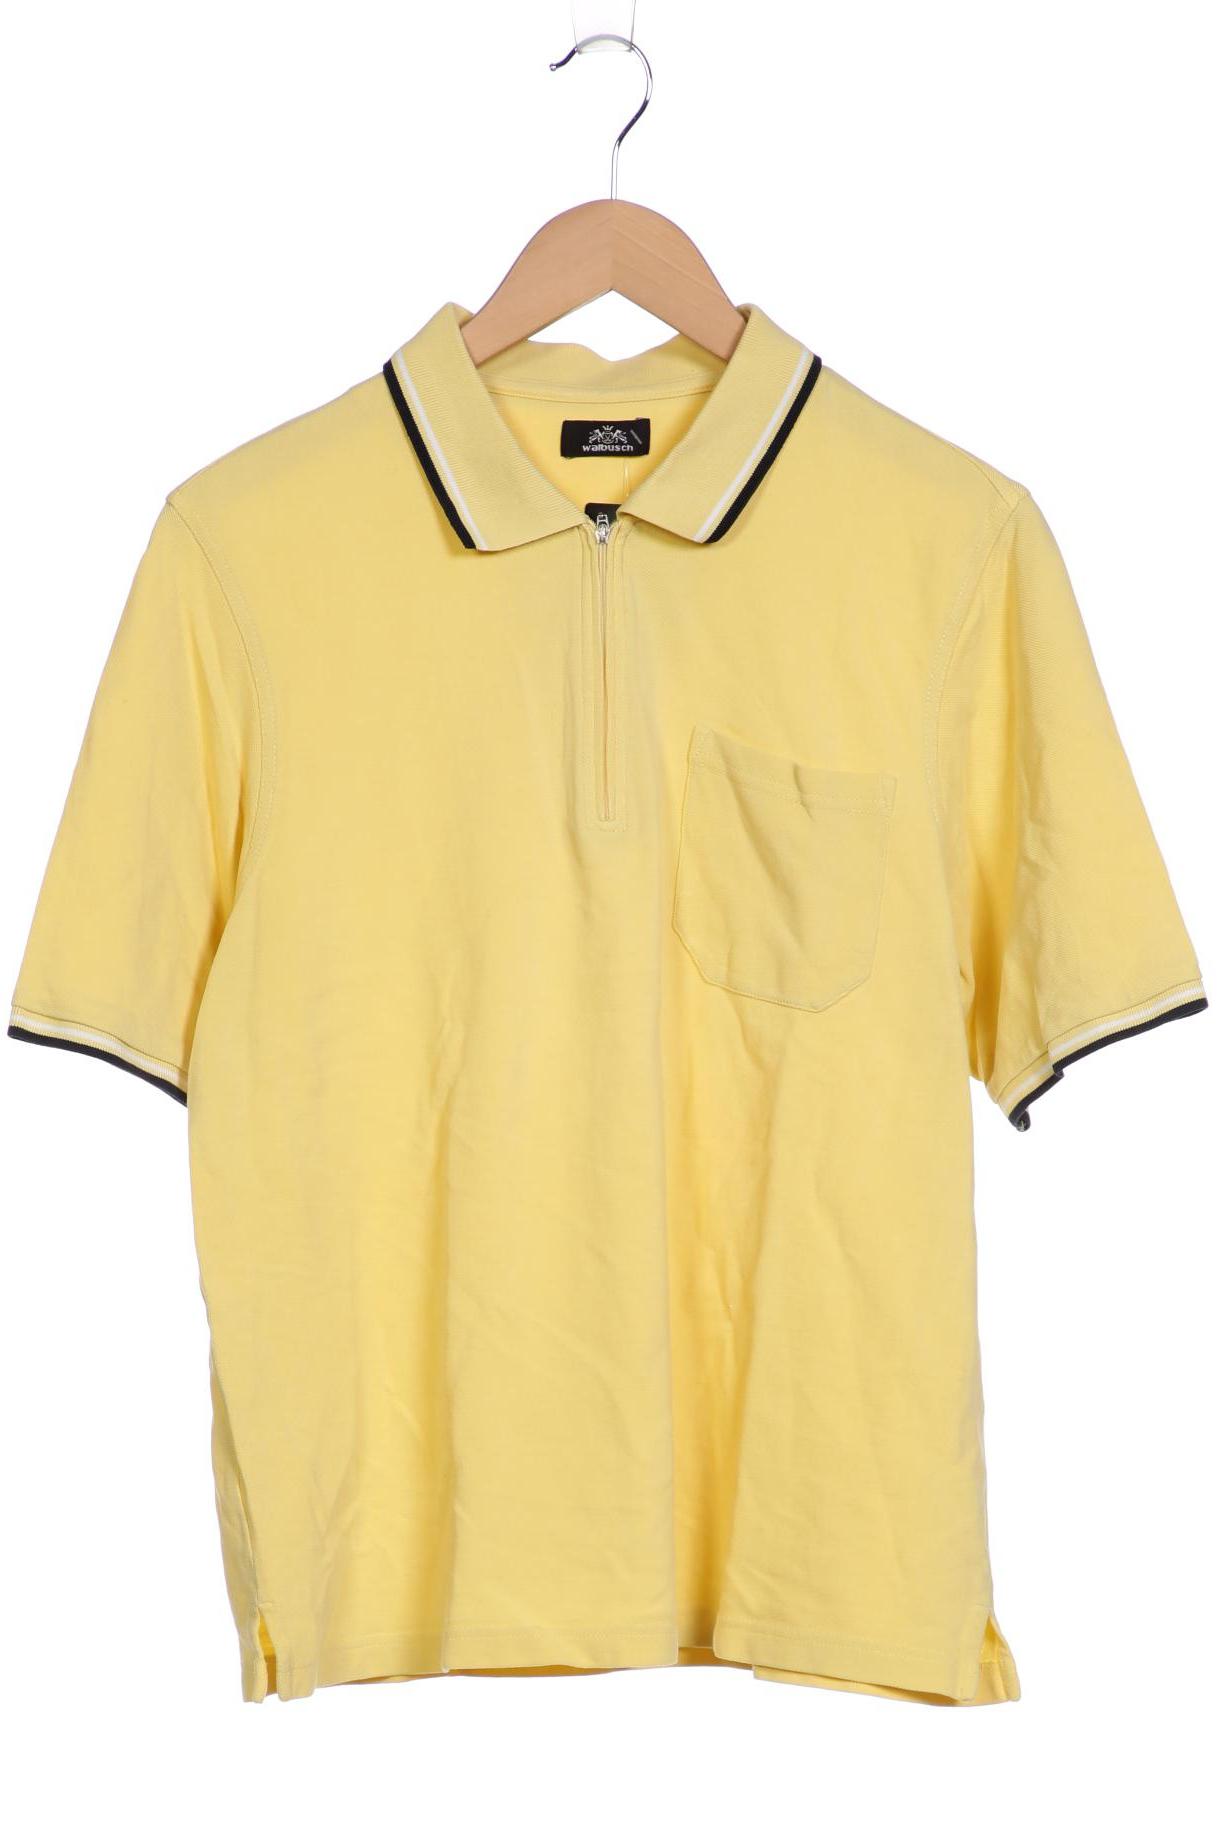 Walbusch Herren Poloshirt, gelb, Gr. 50 von Walbusch